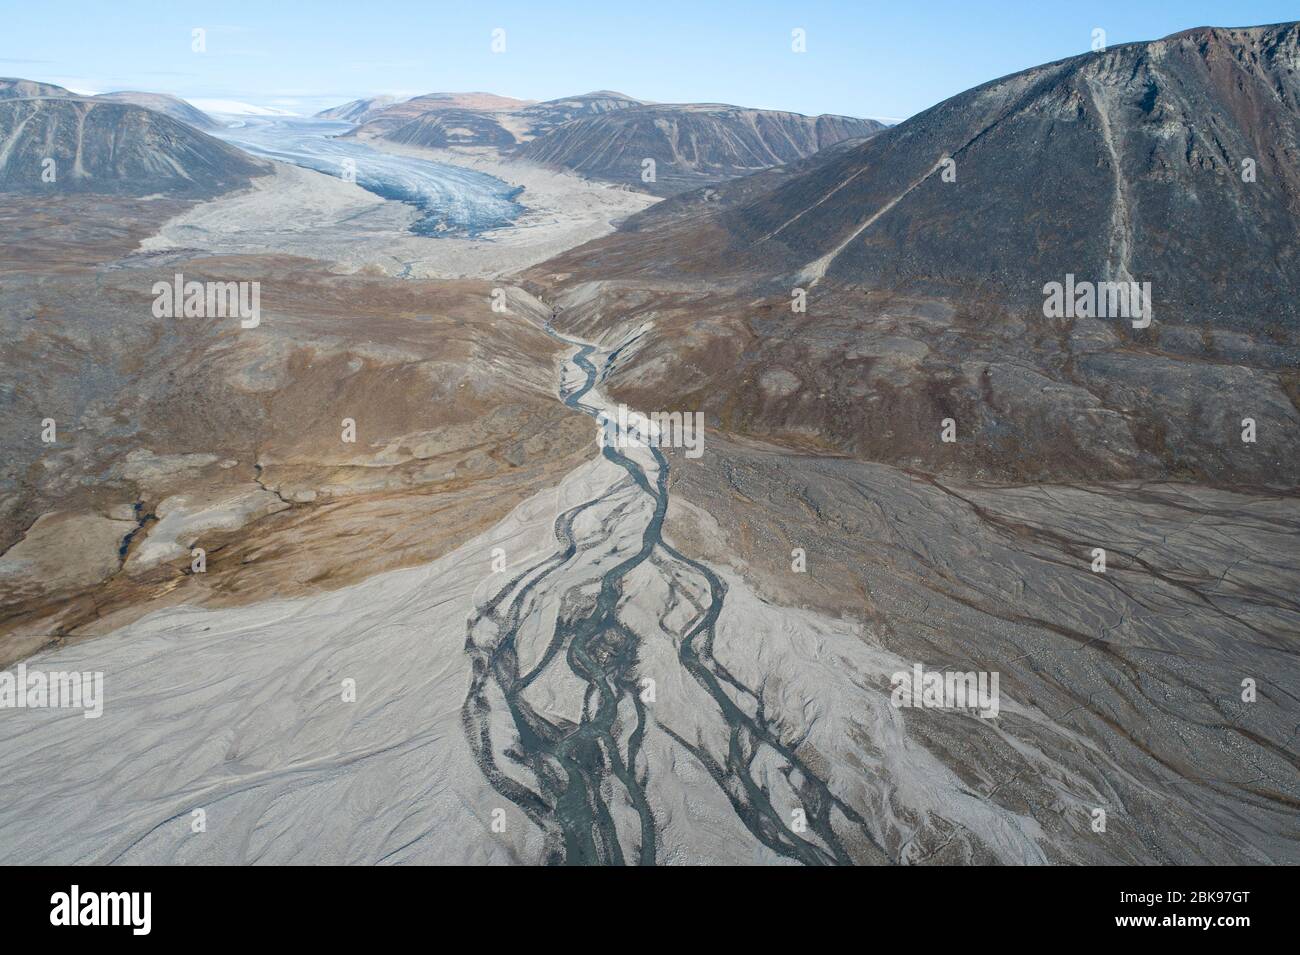 Glacier en train de mourir, île de Baffin, Canada Banque D'Images